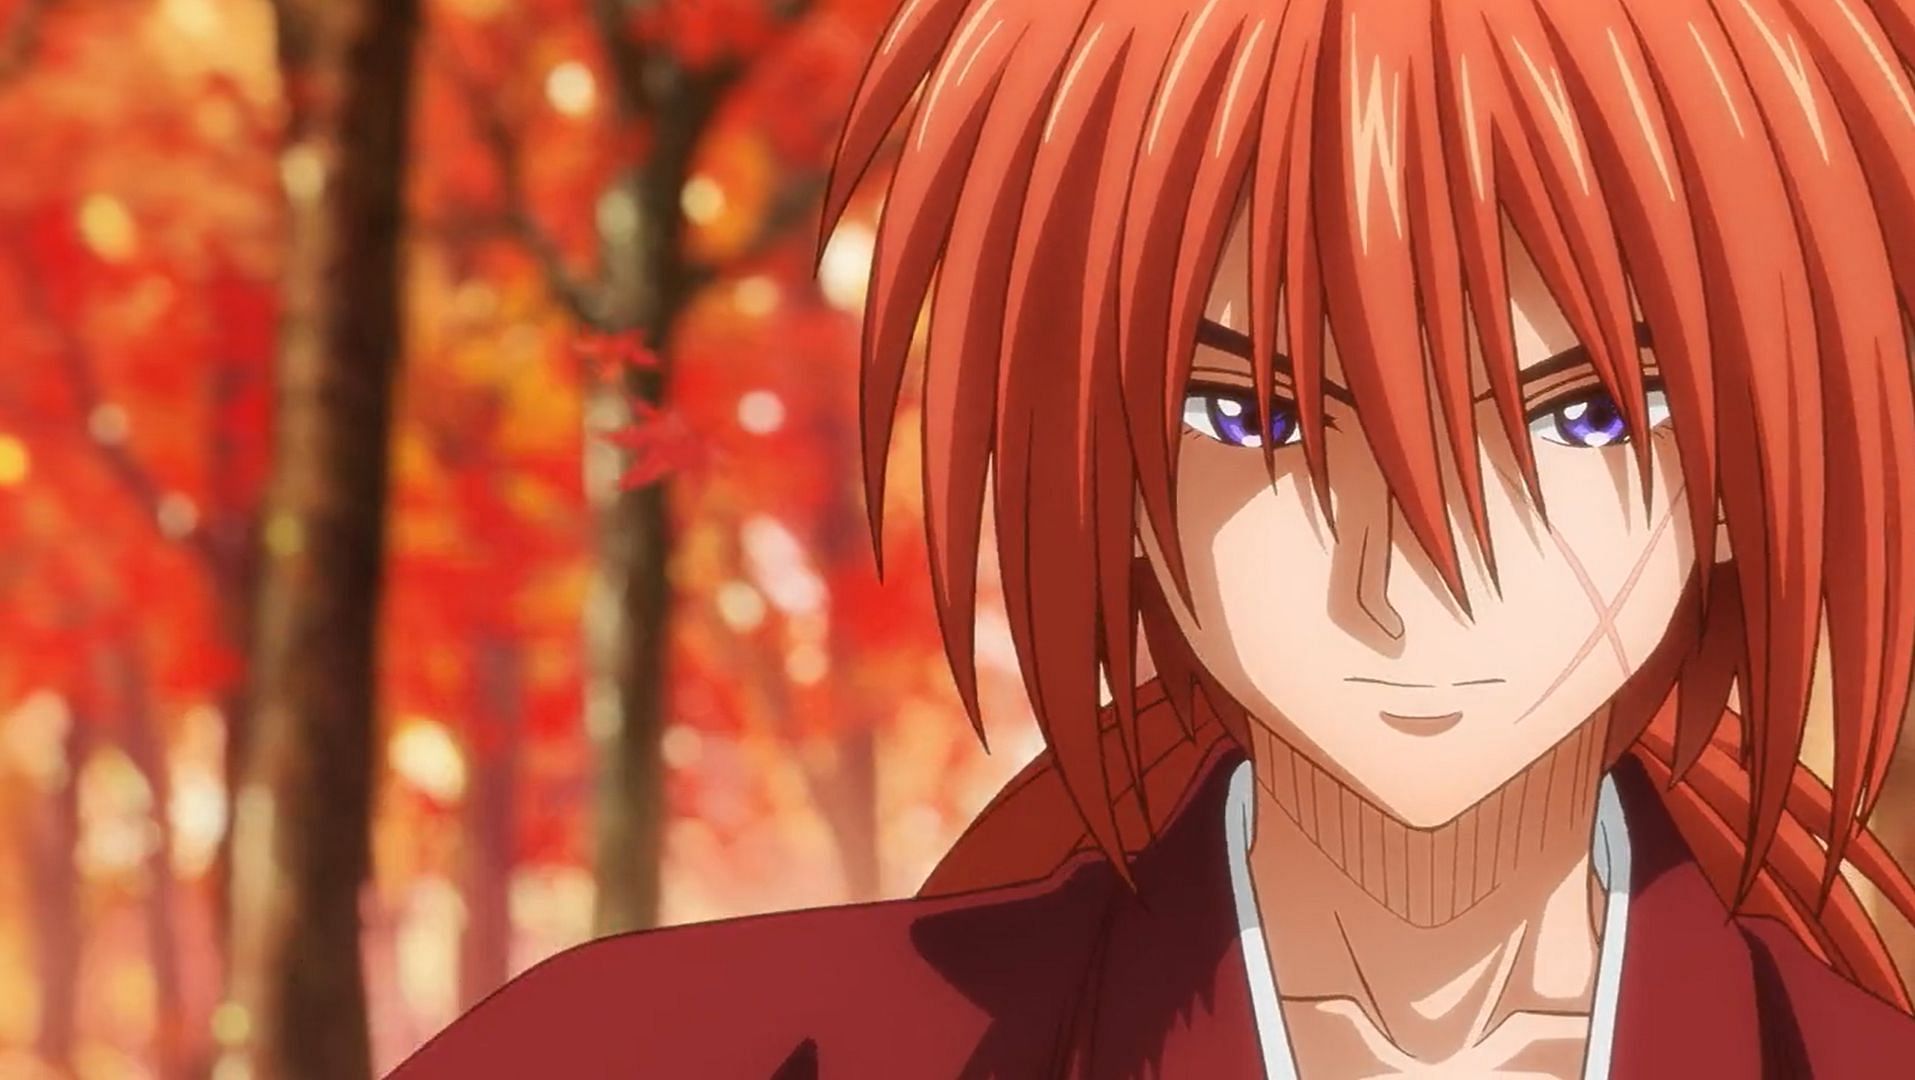 Rurouni Kenshin anime: Release date, characters, seiyuu